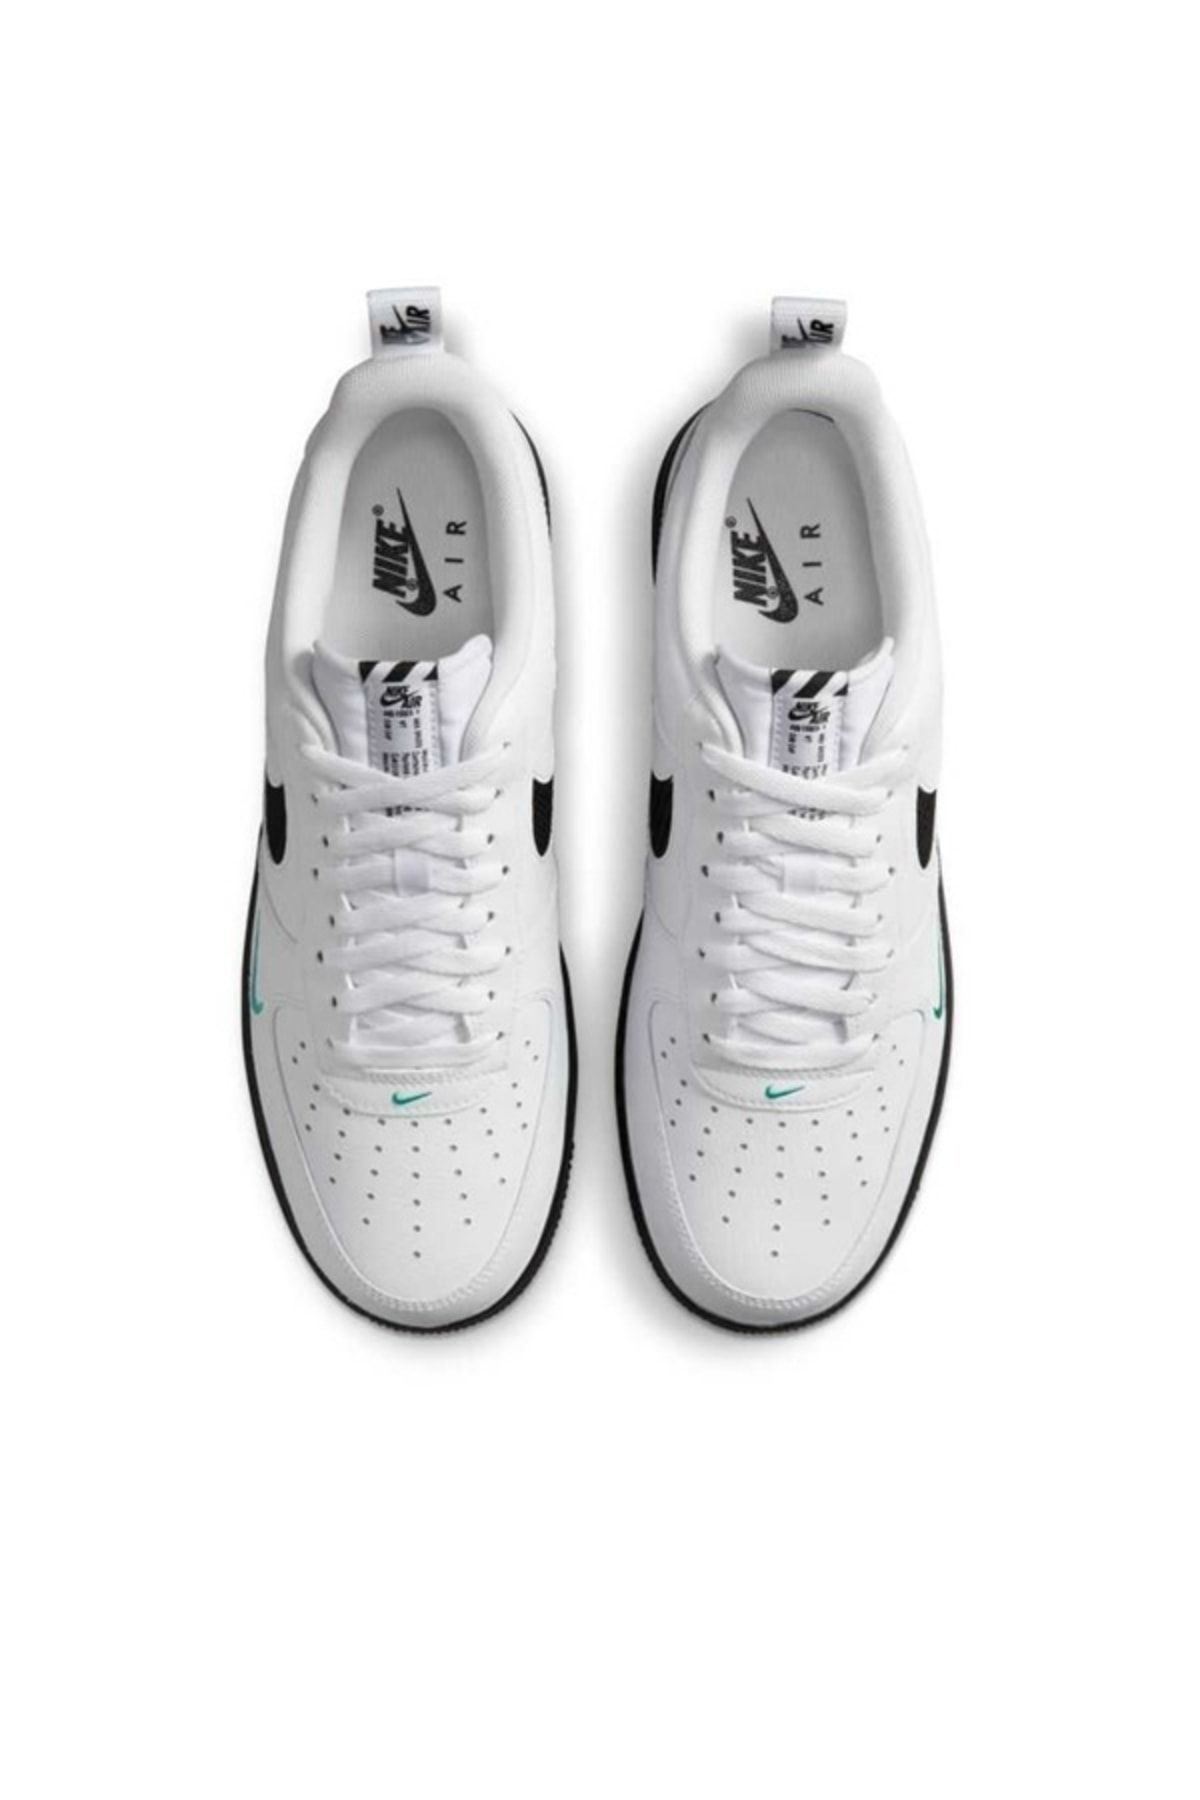 Nike Air Force 1 07 Lv8 J22 Erkek Sneaker Ayakkabı l Sportinn